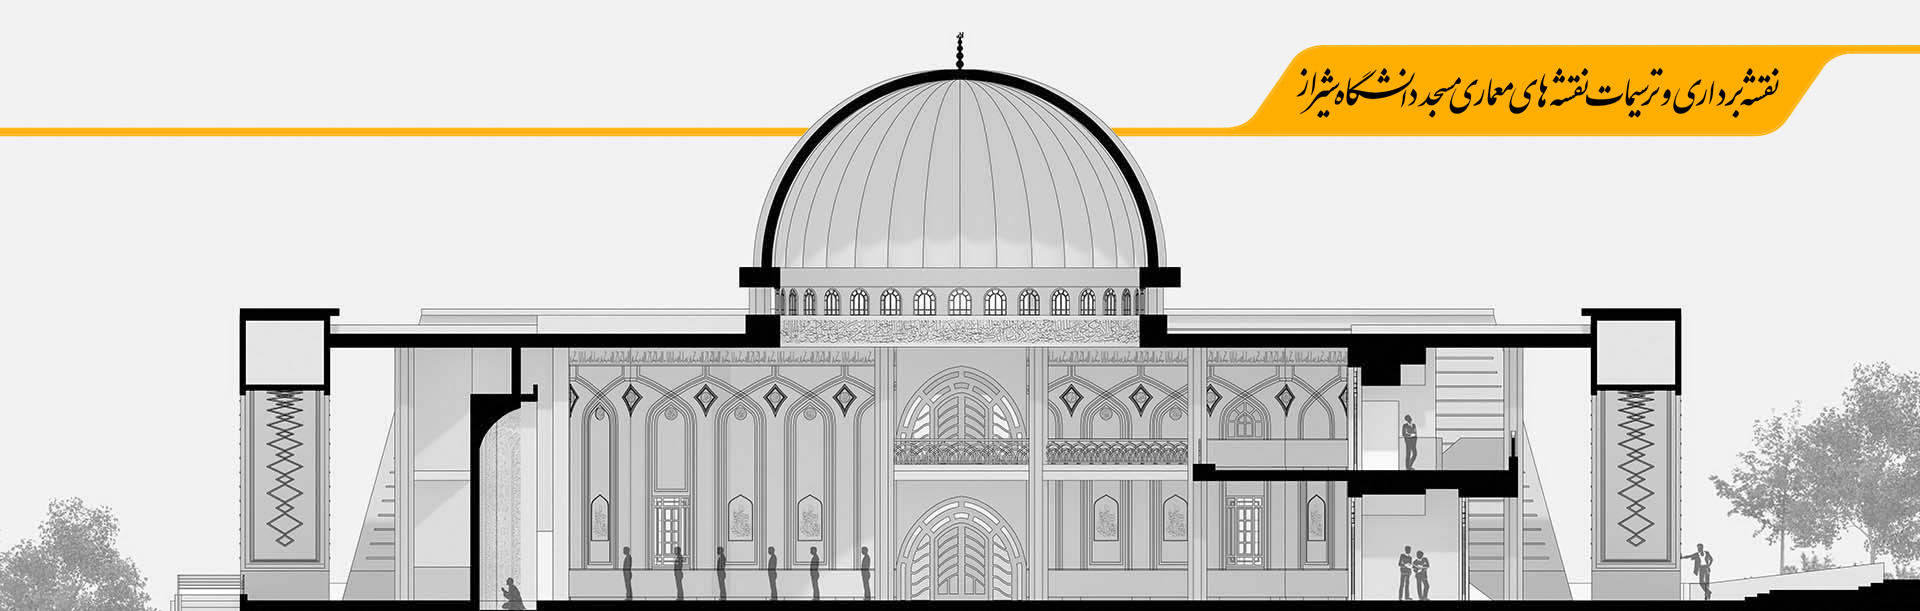 پروژه نقشه برداری و ترسیمات نقشه های معماری مسجد دانشگاه شیراز